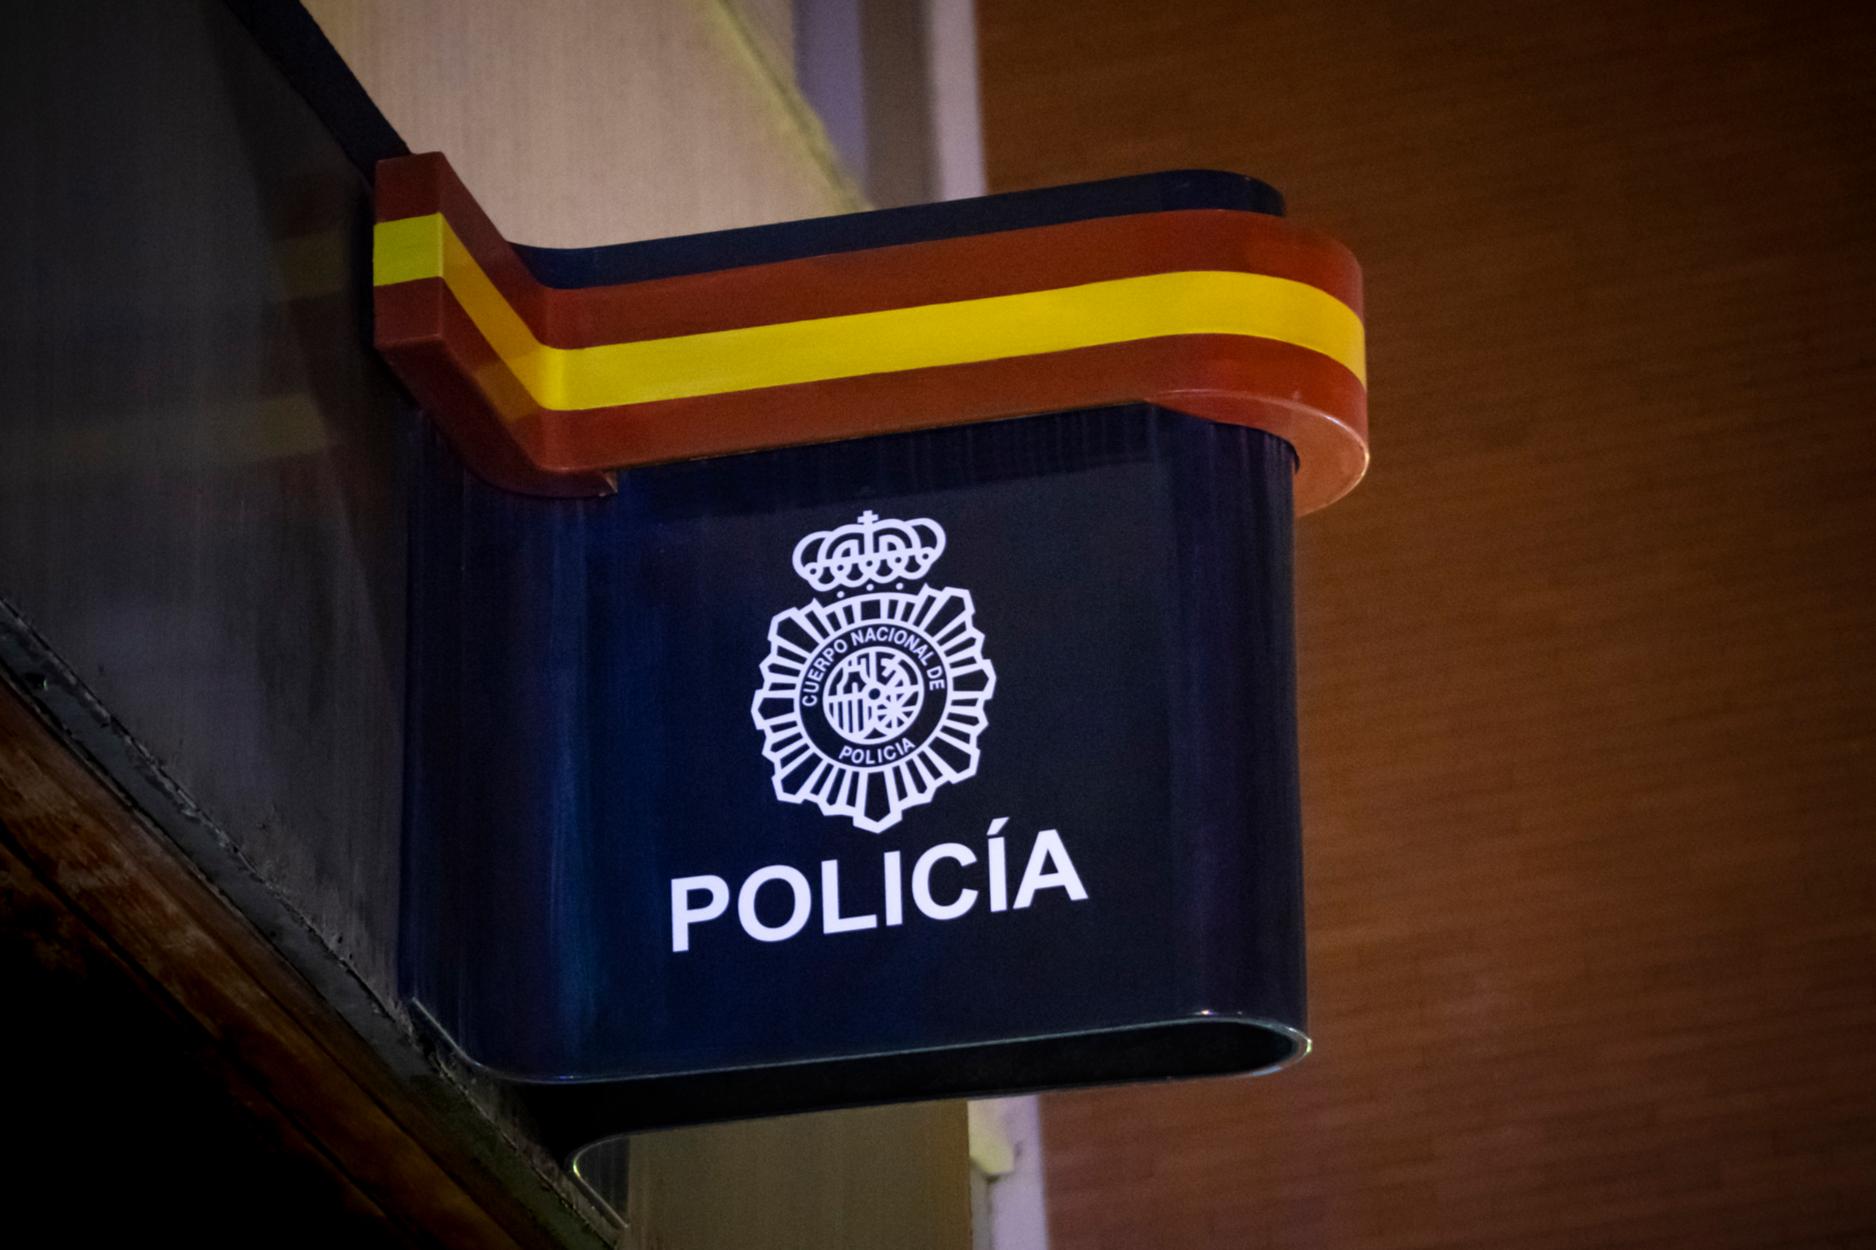 La Policía Nacional desarticula una organización criminal que estafaba en gasolineras con tarjetas de repostaje